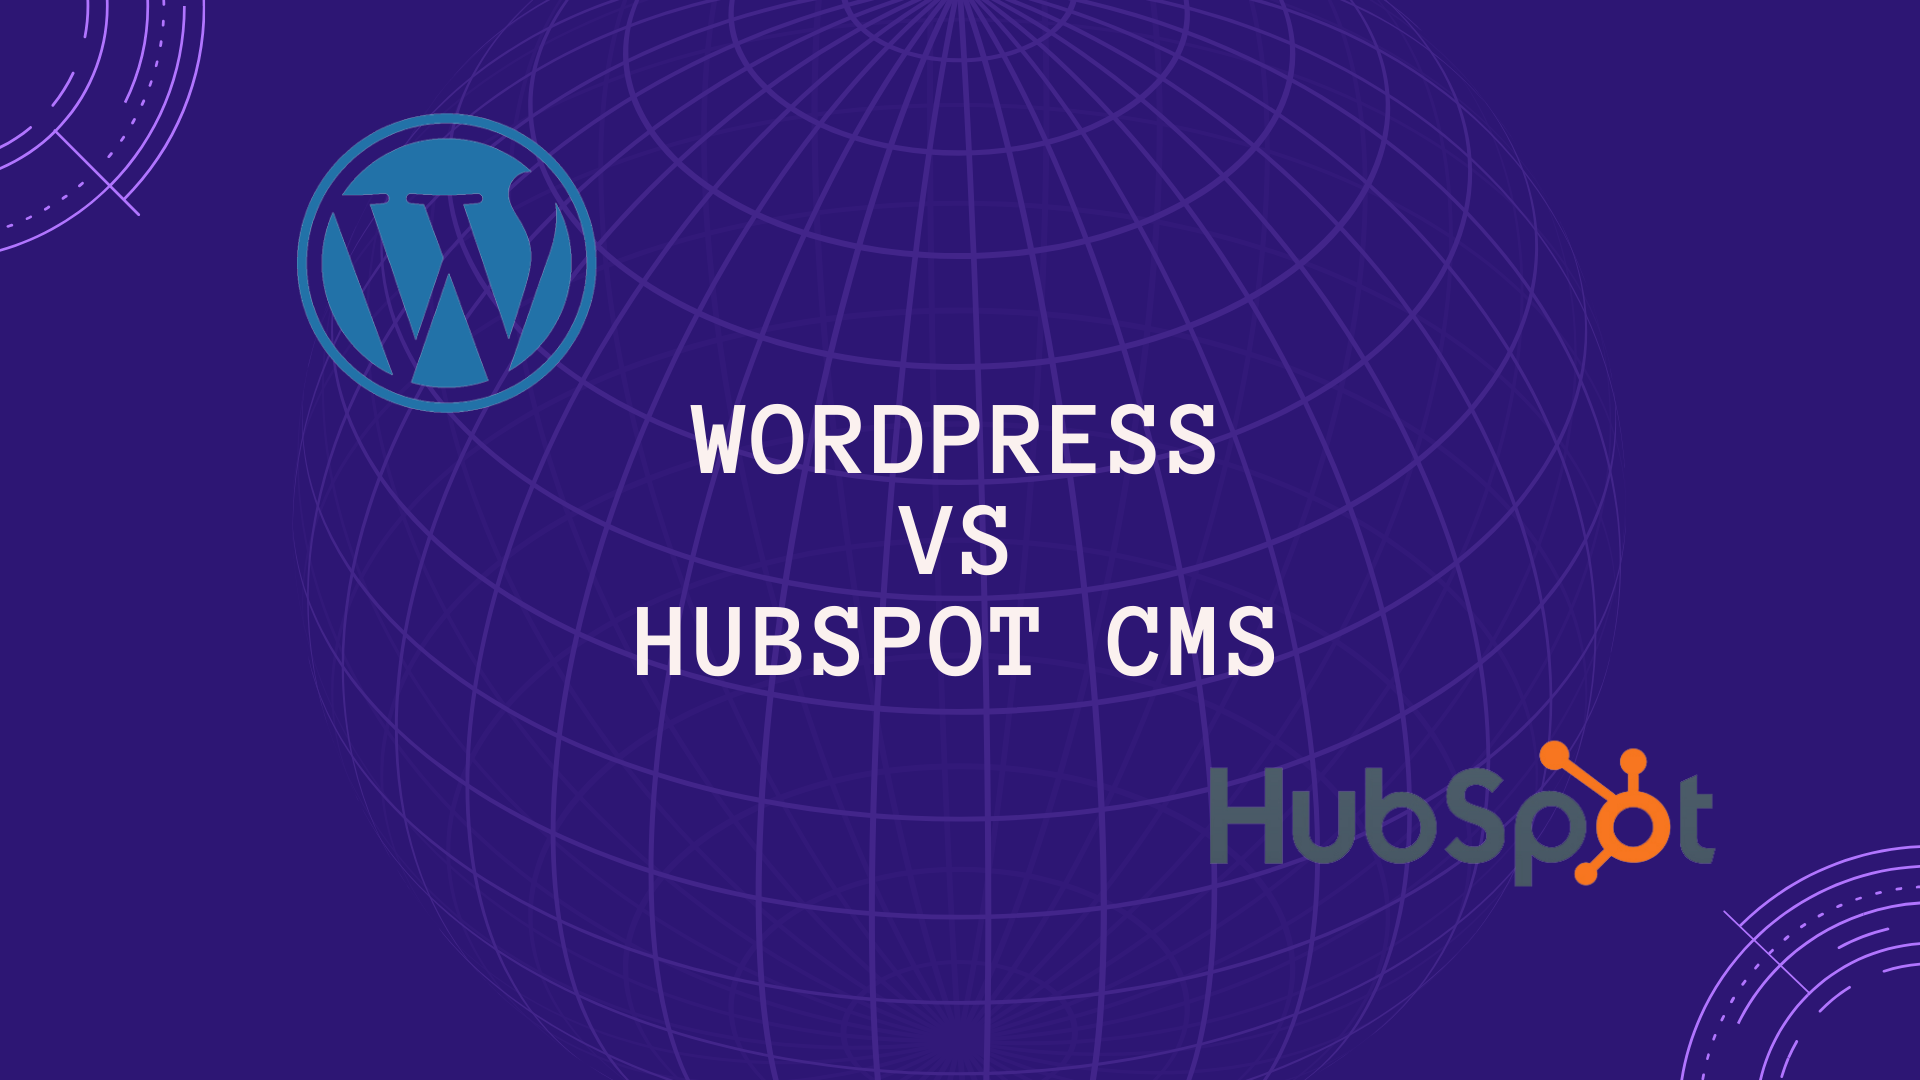 WordPress vs Hubspot CMS